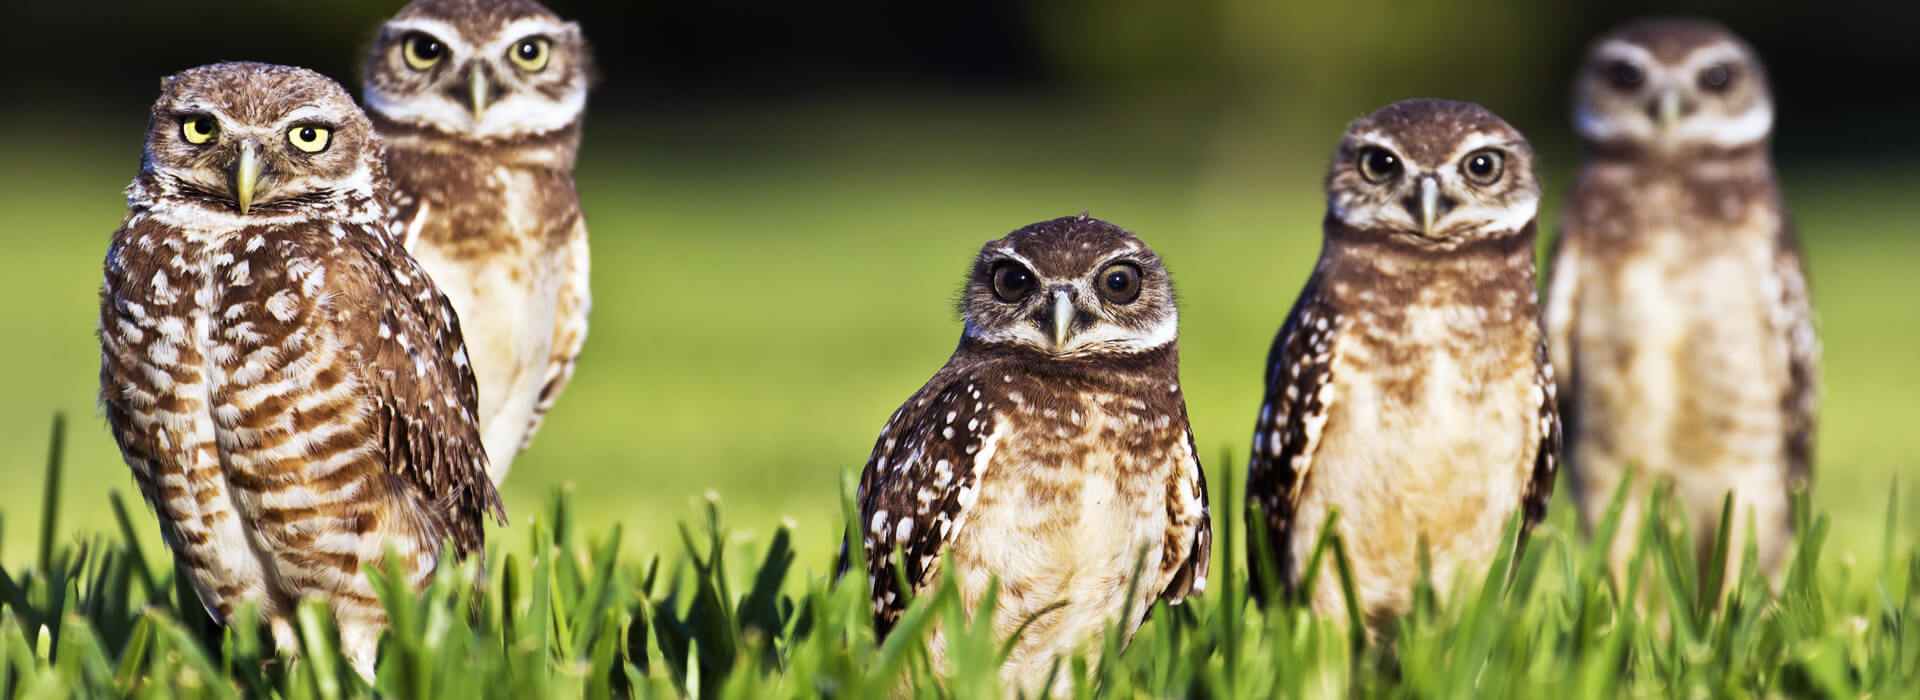 Burrowing Owls, Dan Lee, Shutterstock